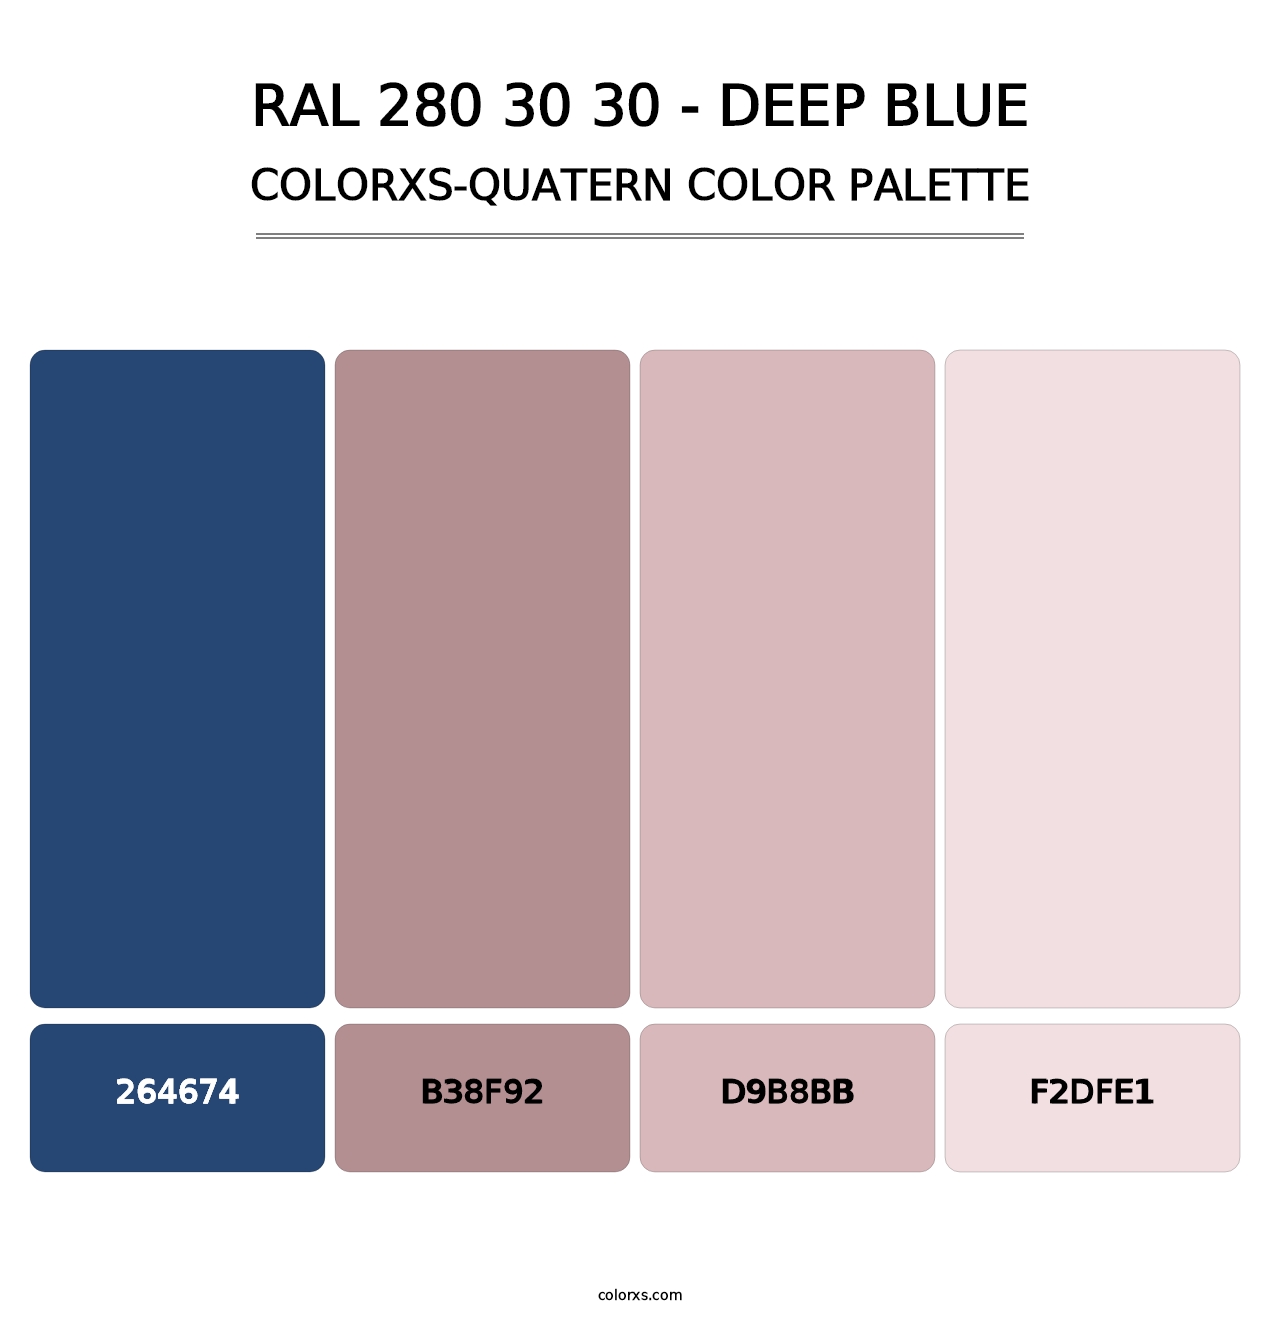 RAL 280 30 30 - Deep Blue - Colorxs Quatern Palette